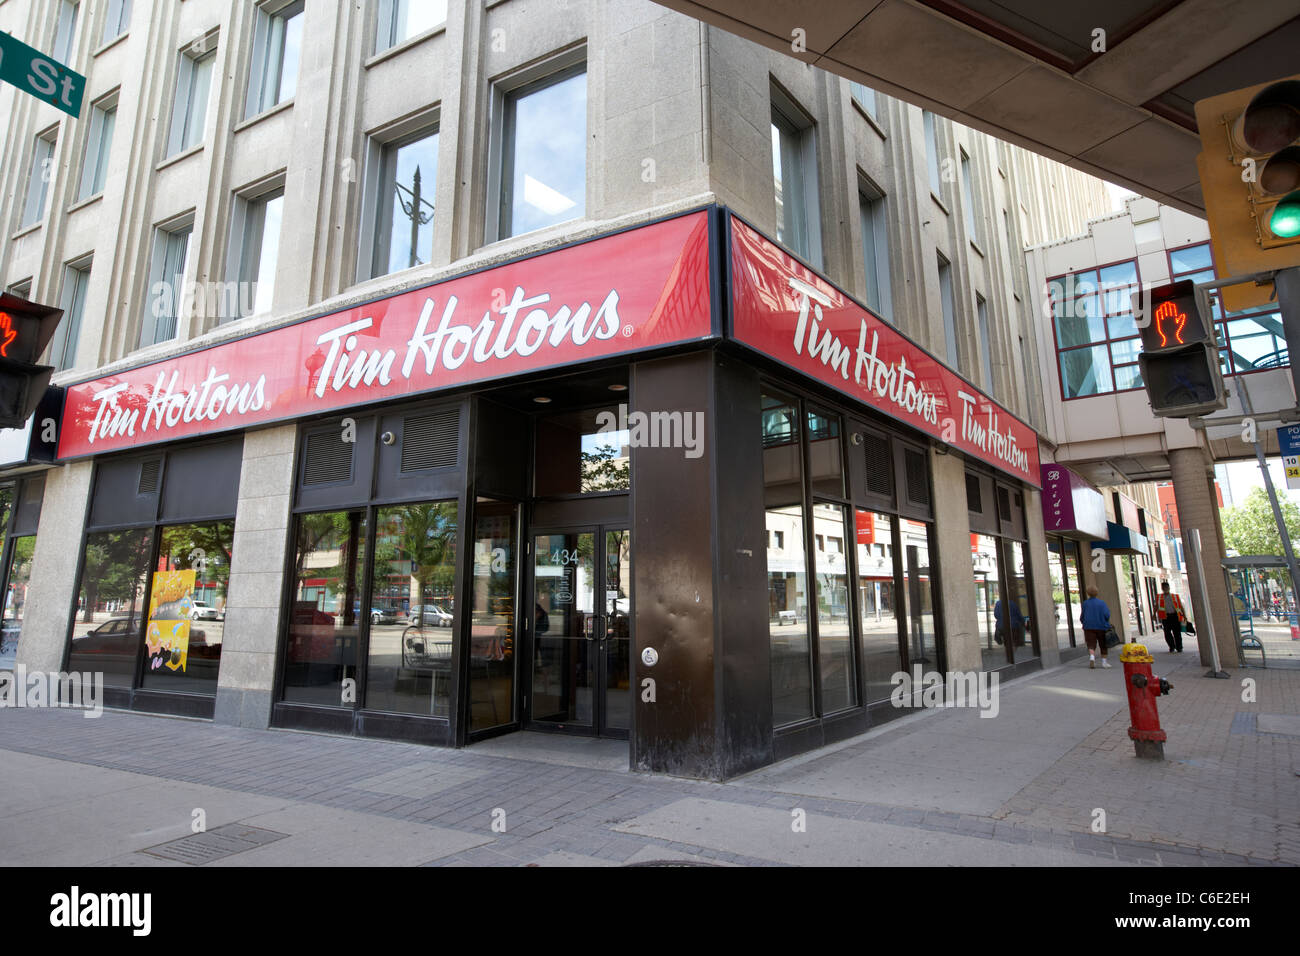 Boutique de café Tim Hortons sur coin bloc Winnipeg Manitoba canada Banque D'Images